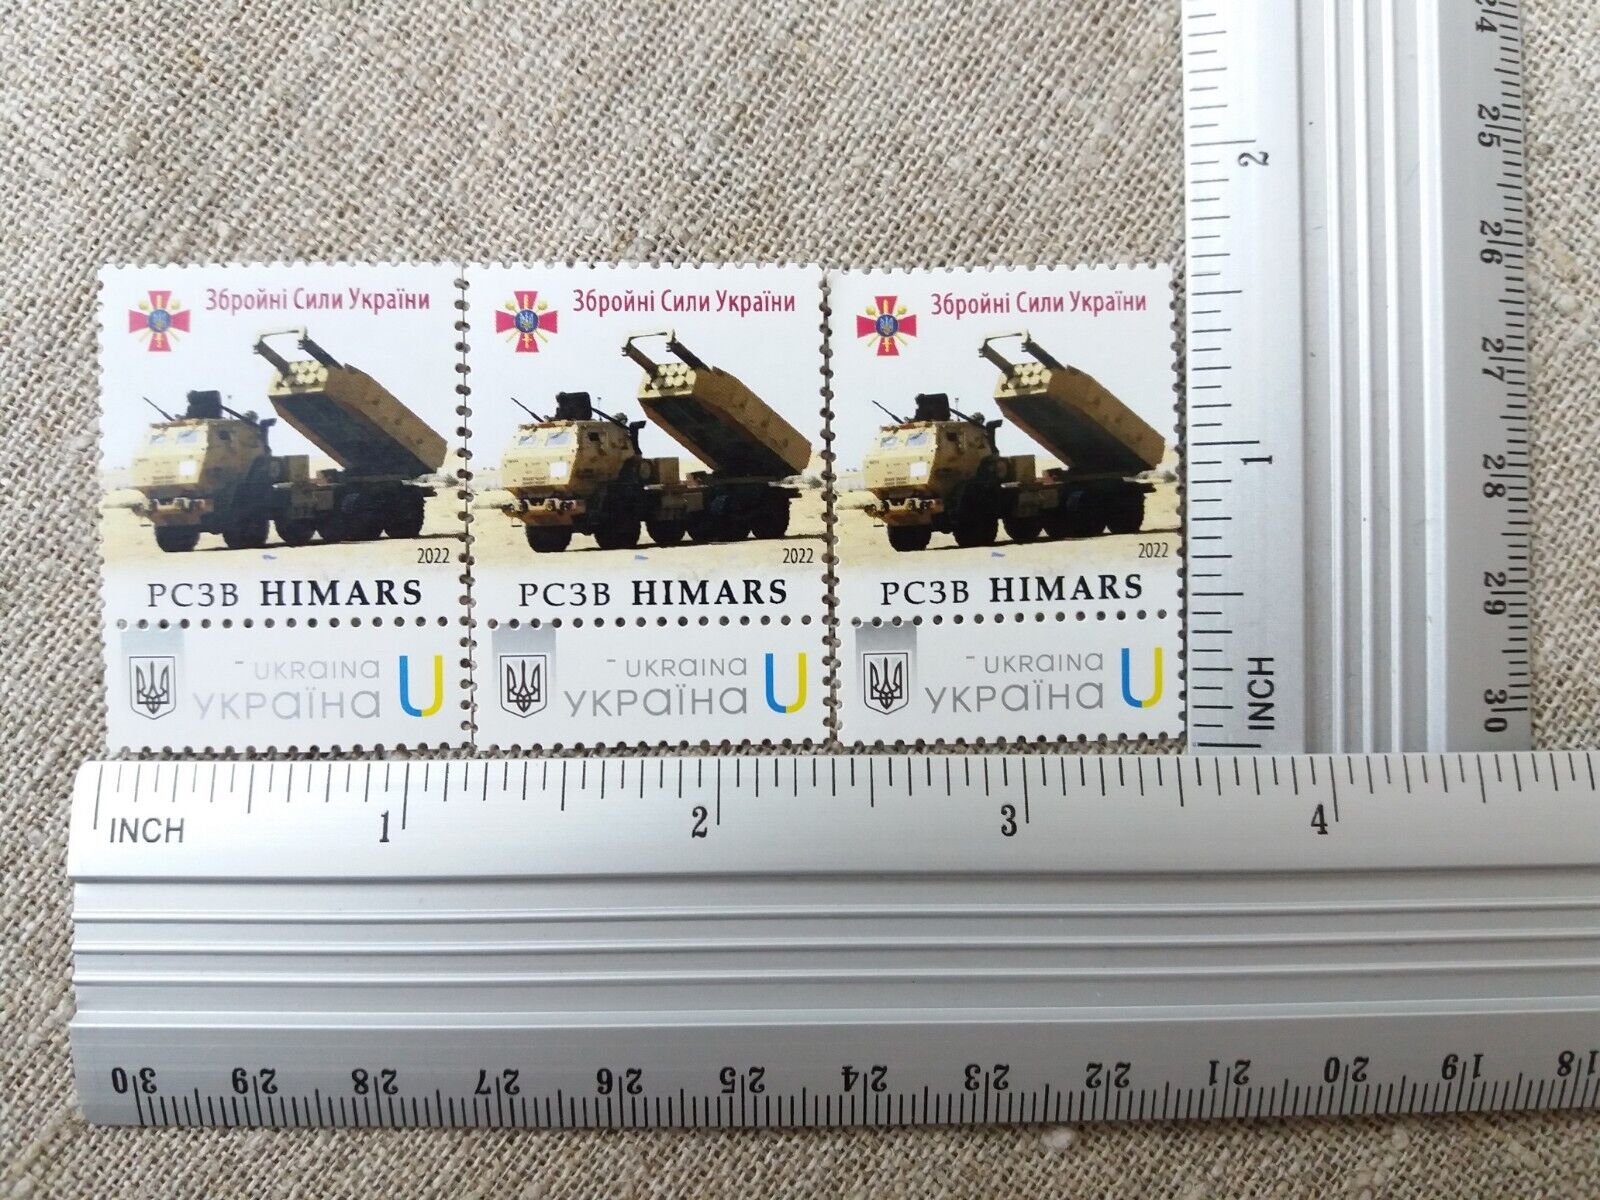 Postage stamp APU M142 HIMARS War Ukraine 2022 Без бренда - фотография #4